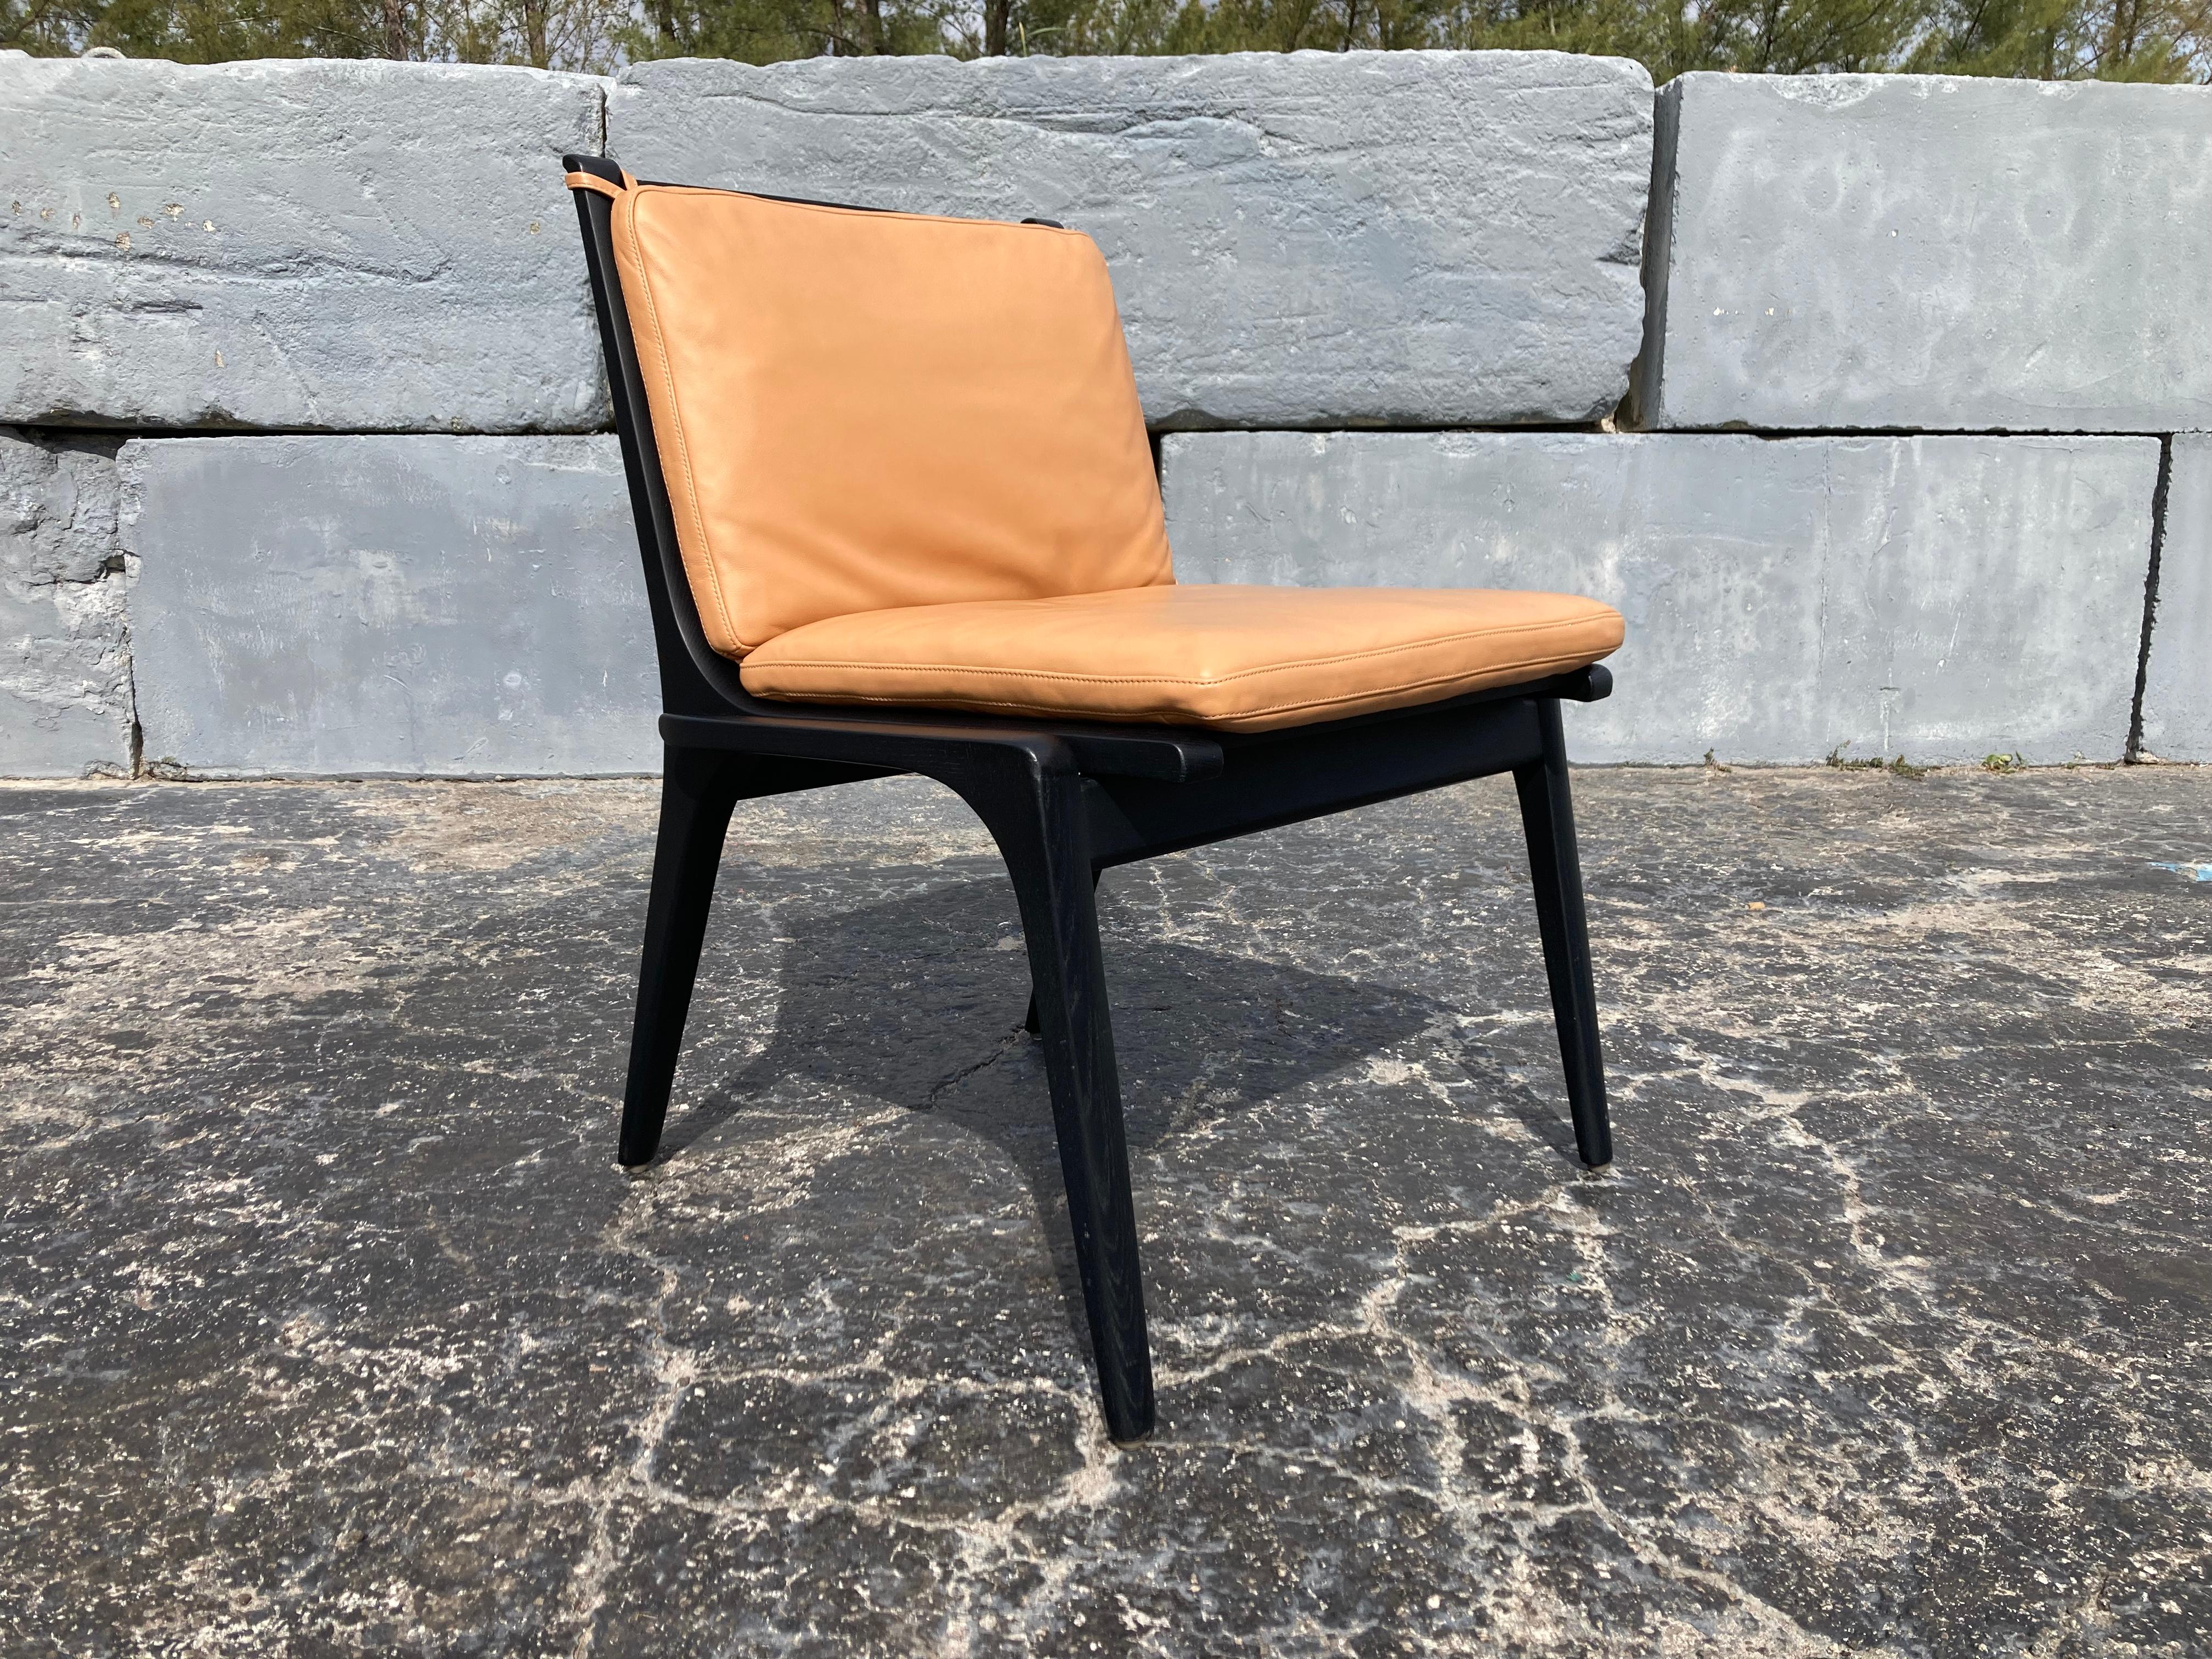 Chaise d'appoint Rén de Stellar Works conçue par Space Copenhagen, chêne, cuir. Canapé assorti disponible.